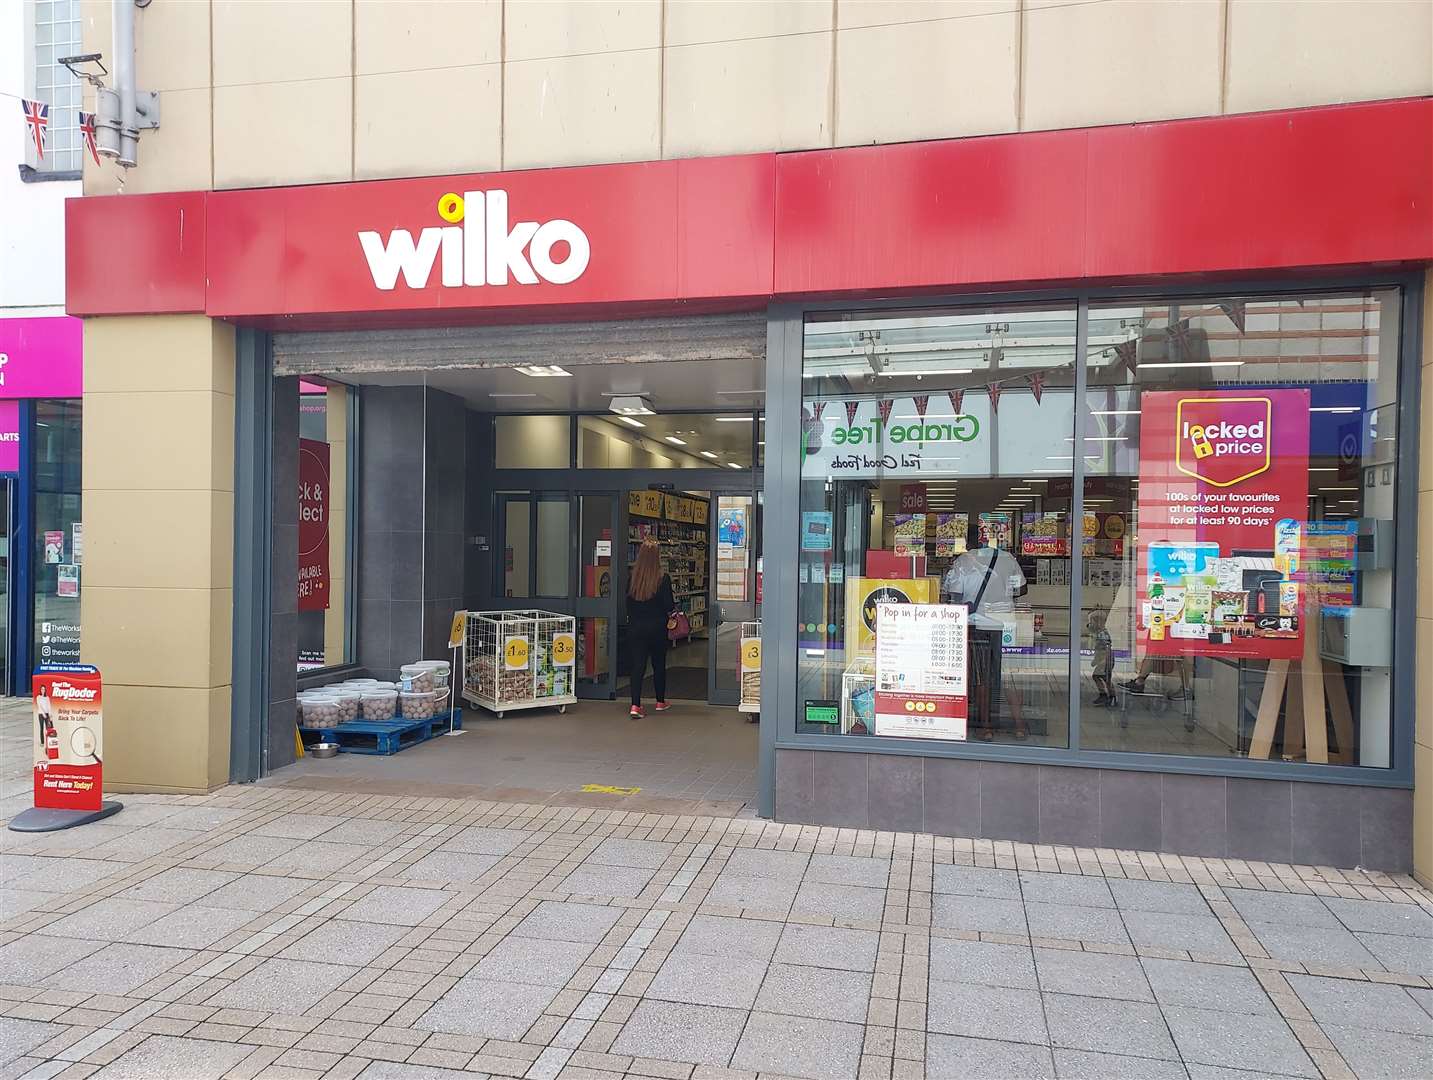 The Wilko store in King's Lynn